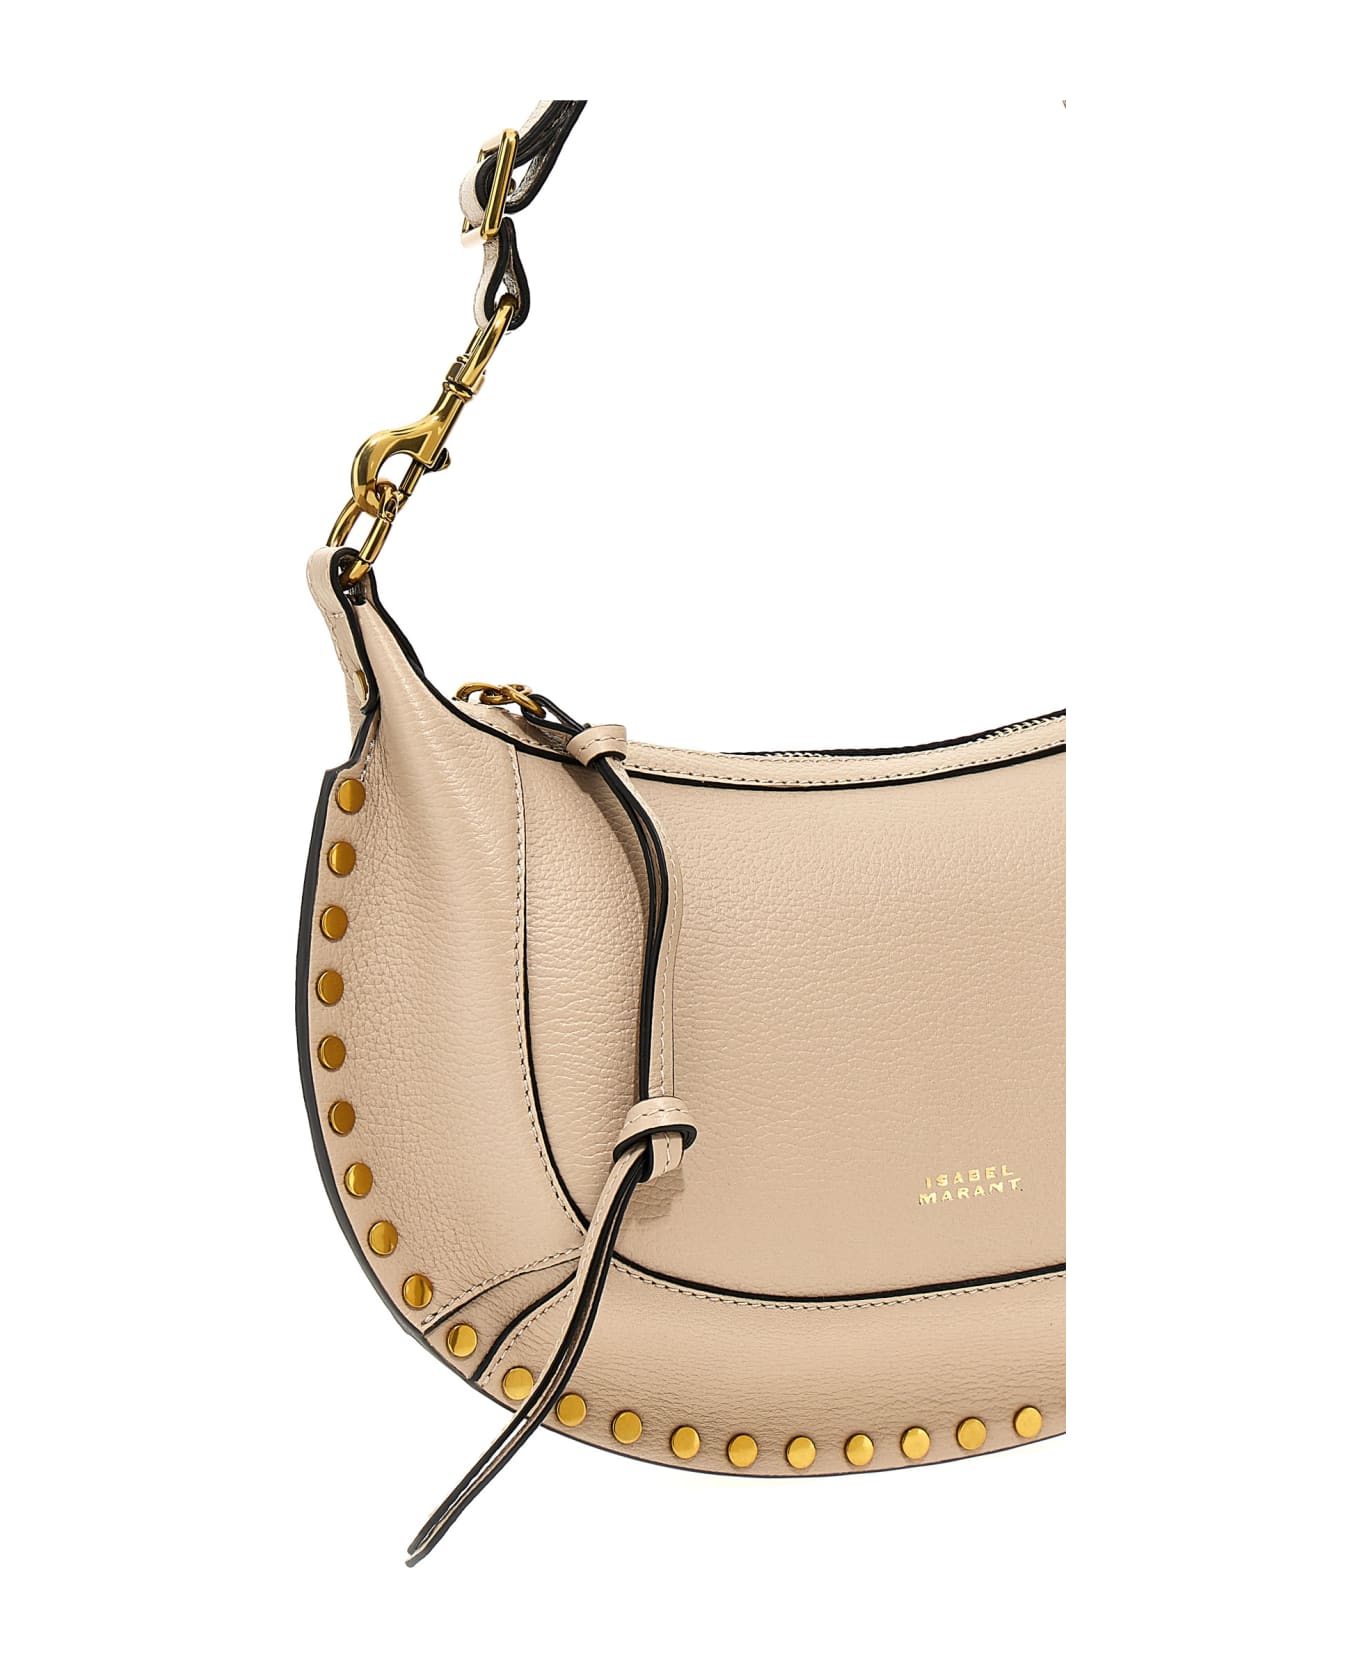 Isabel Marant Shoulder Bag With Studs Detailing In Leather - Beige